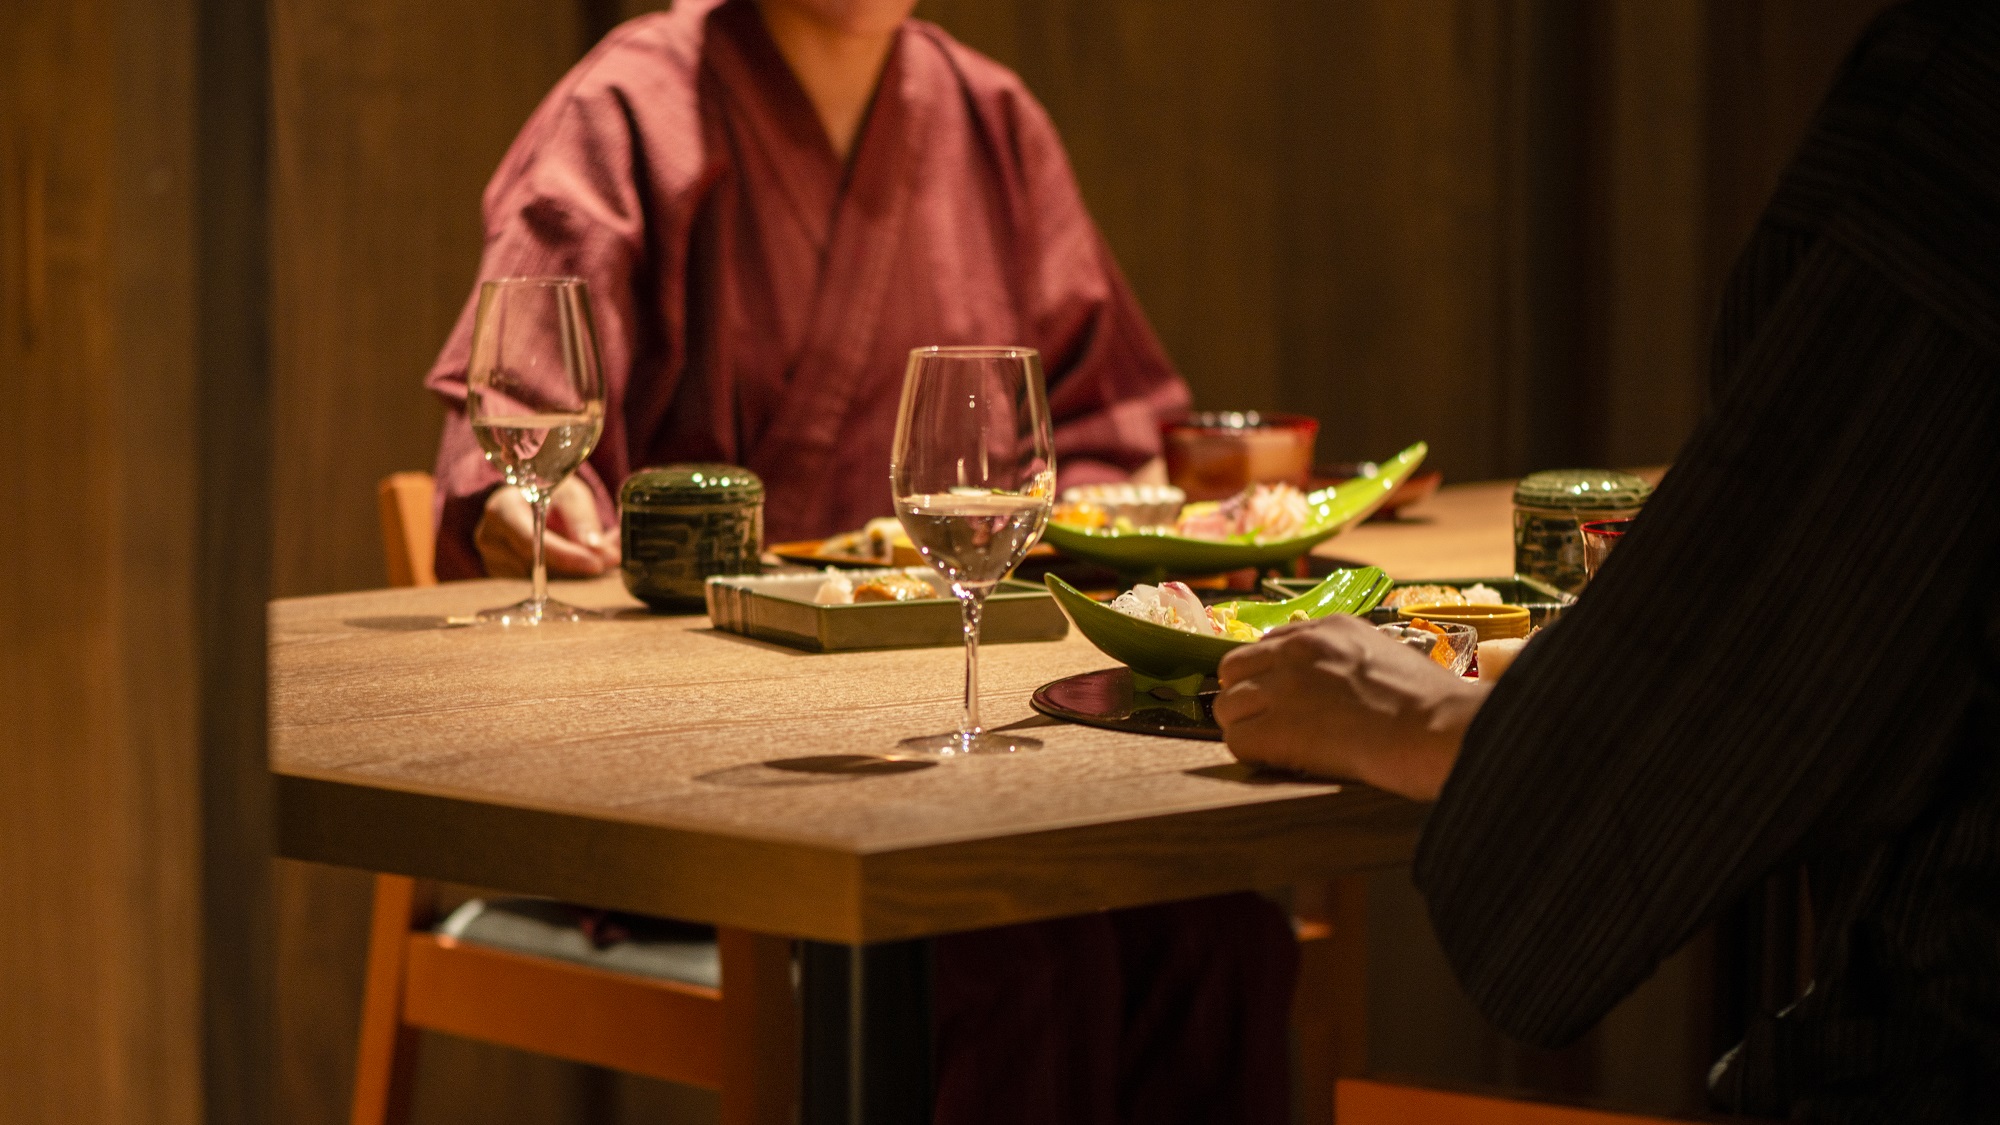 【Kuksa】お客様だけの個室空間で食事と会話を楽しむ。